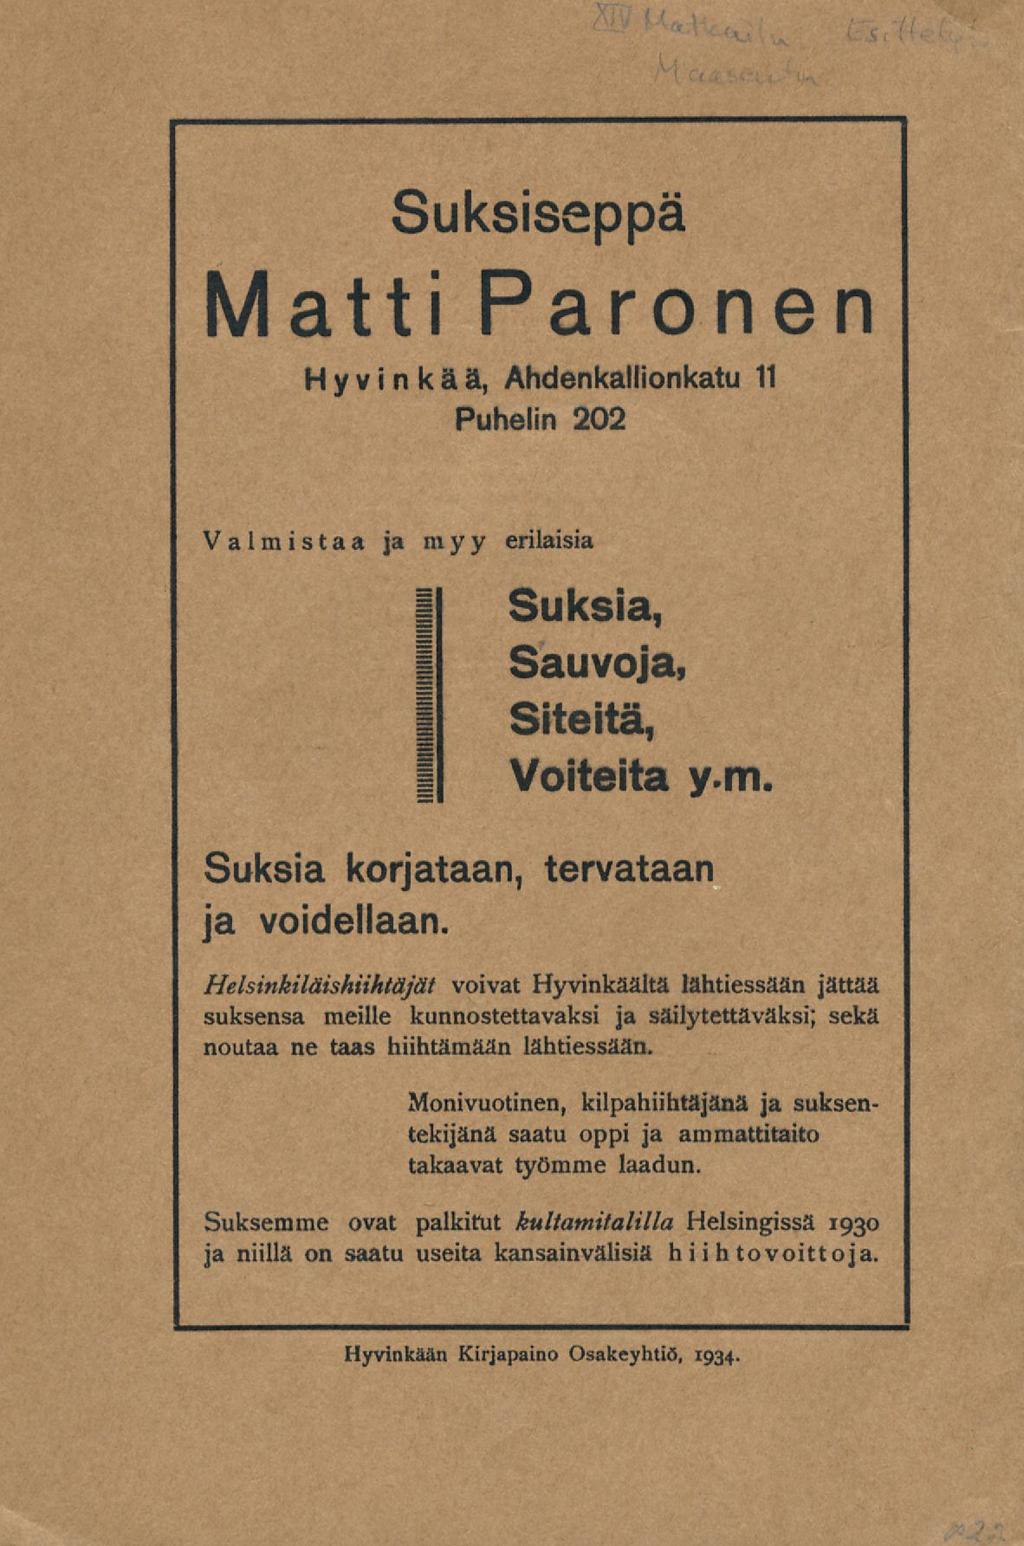 Suksissppä Matti Paronen Hyvinkää, Ahdenkallionkatu 11 Puhelin 202 Valmistaa a myy erilaisia Suksia, Sauvoja, Siteitä, Voiteita y.m. Suksia korjataan, ja voidellaan.